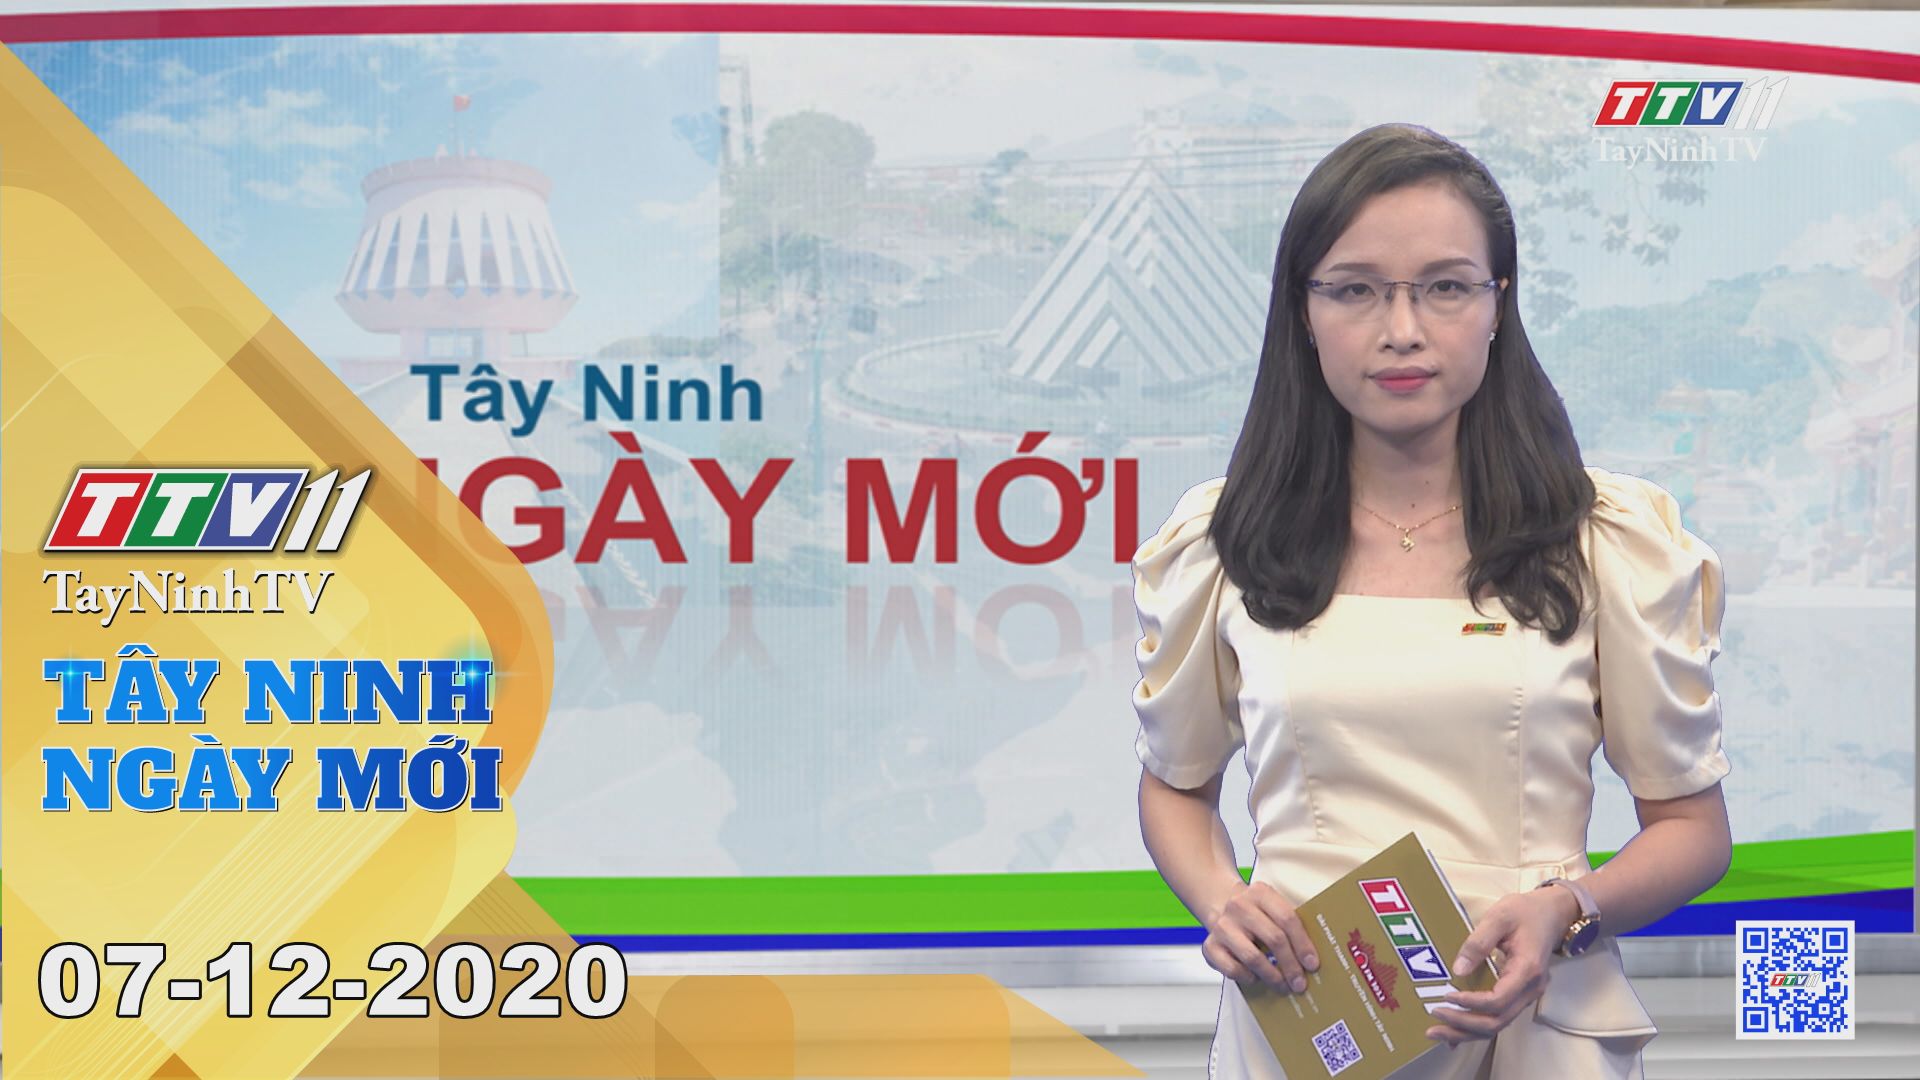 Tây Ninh Ngày Mới 07-12-2020 | Tin tức hôm nay | TayNinhTV